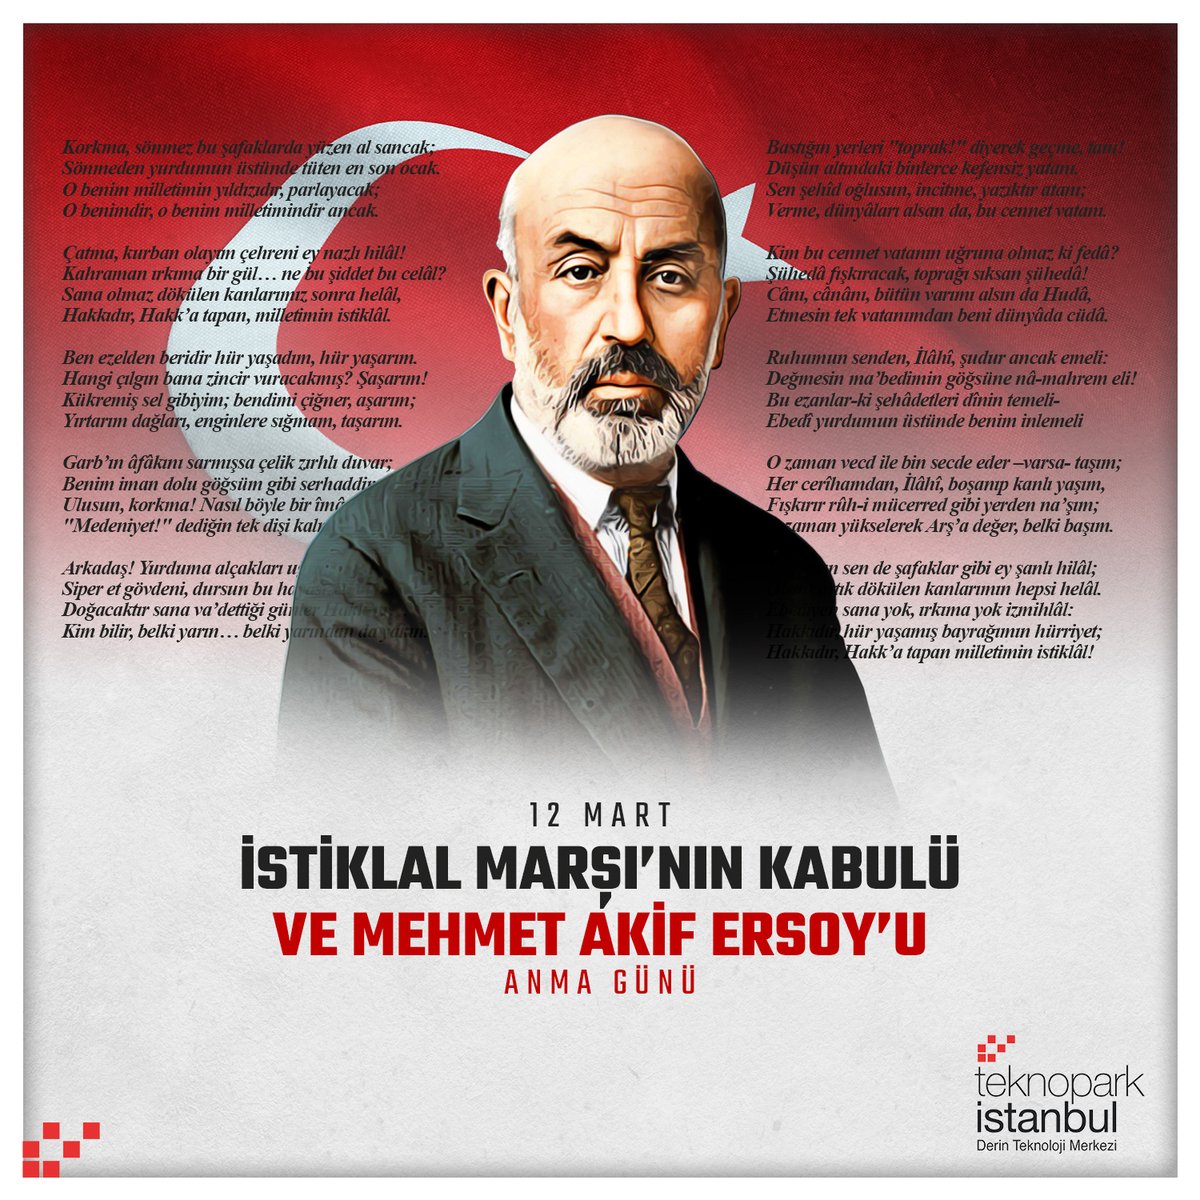 İstiklal Marşı’nın kabulünün 103. yılında vatan şairi Mehmet Akif Ersoy’u ve tüm şehitlerimizi rahmetle anıyoruz.